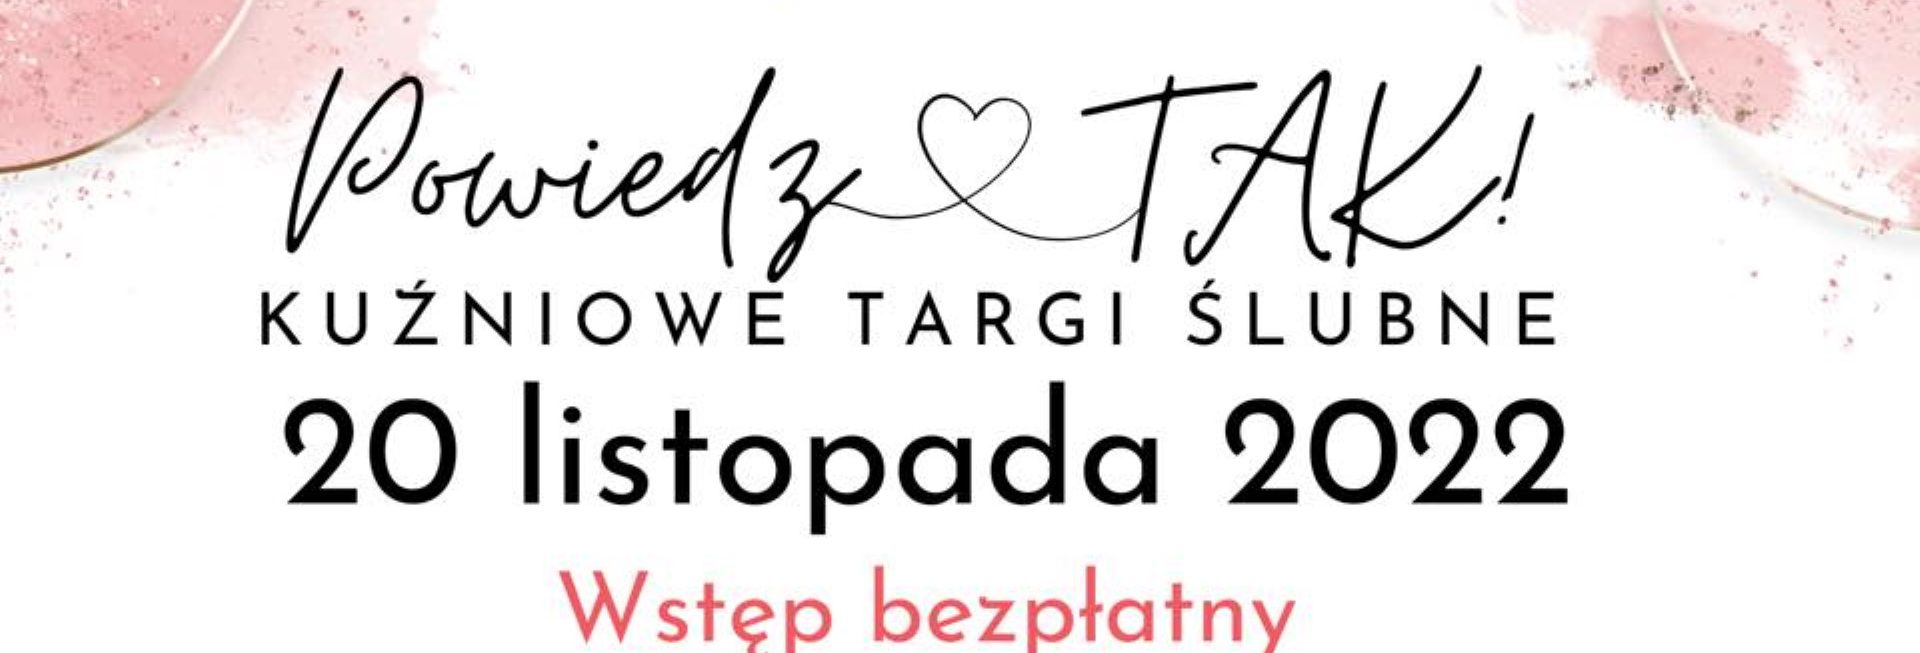 Plakat zapraszający do Kuźni Społecznej w Olsztynie na Kuźniowe Targi Ślubne Powiedz TAK! Olsztyn 2022. 